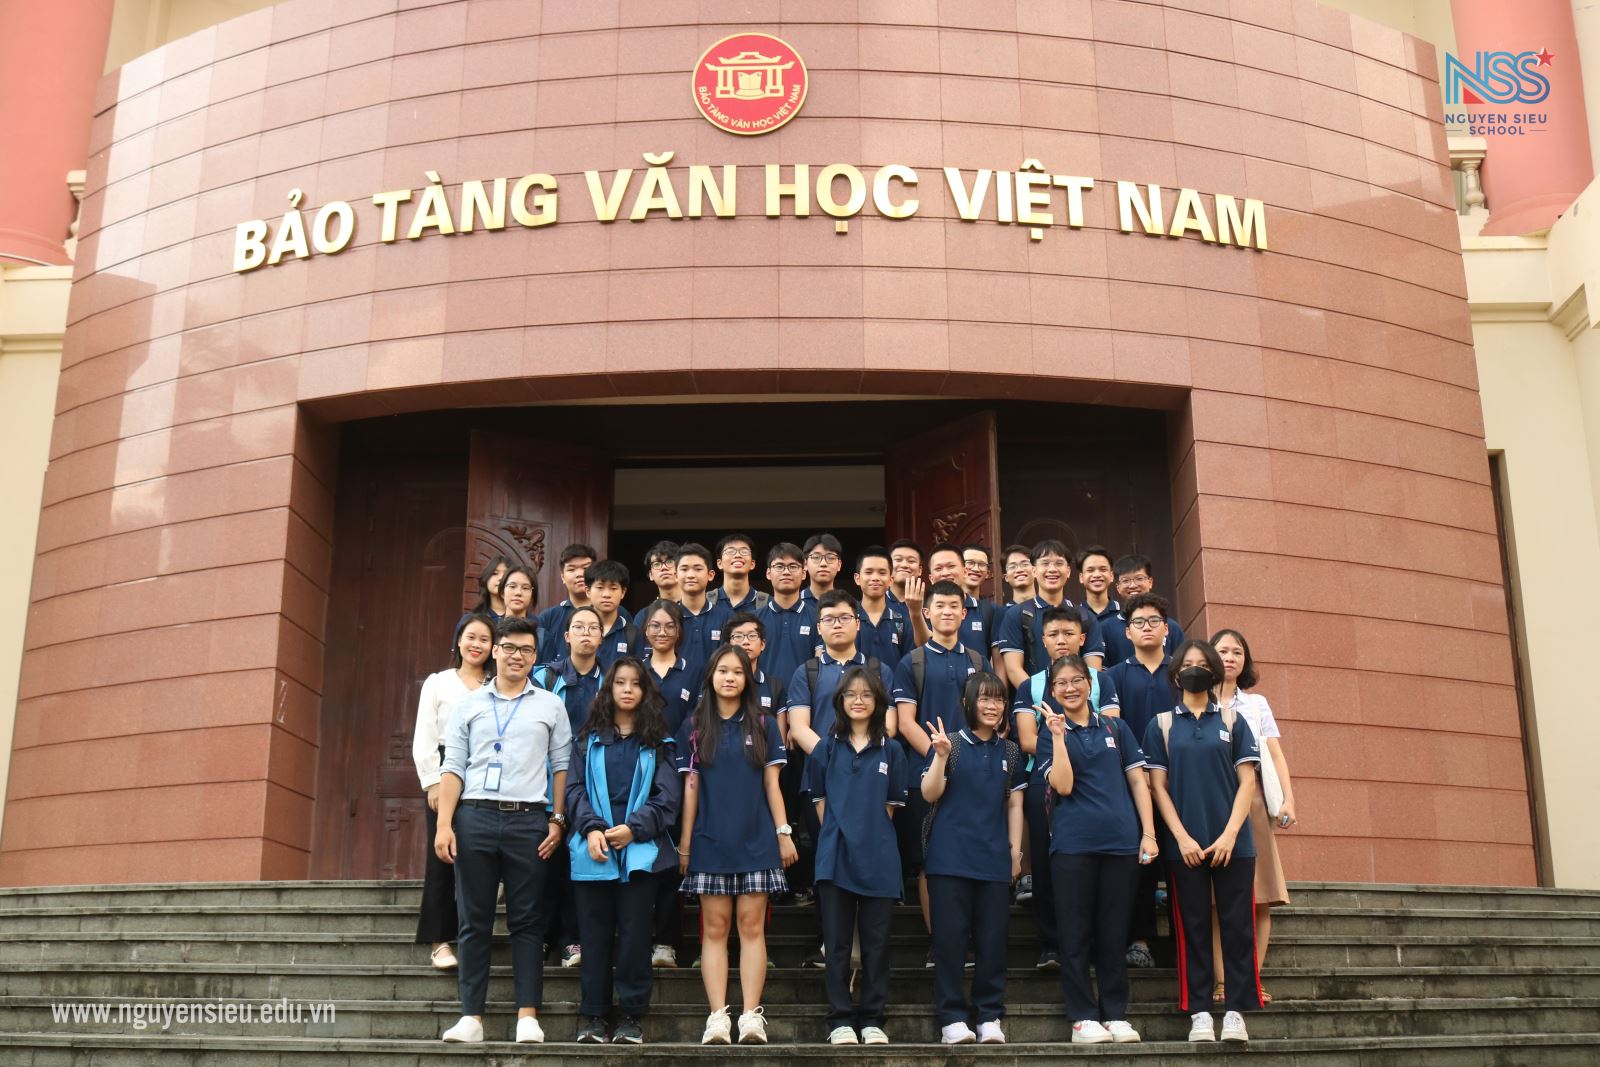 Cùng học sinh khối 11 đi thăm bảo tàng Văn học Việt Nam